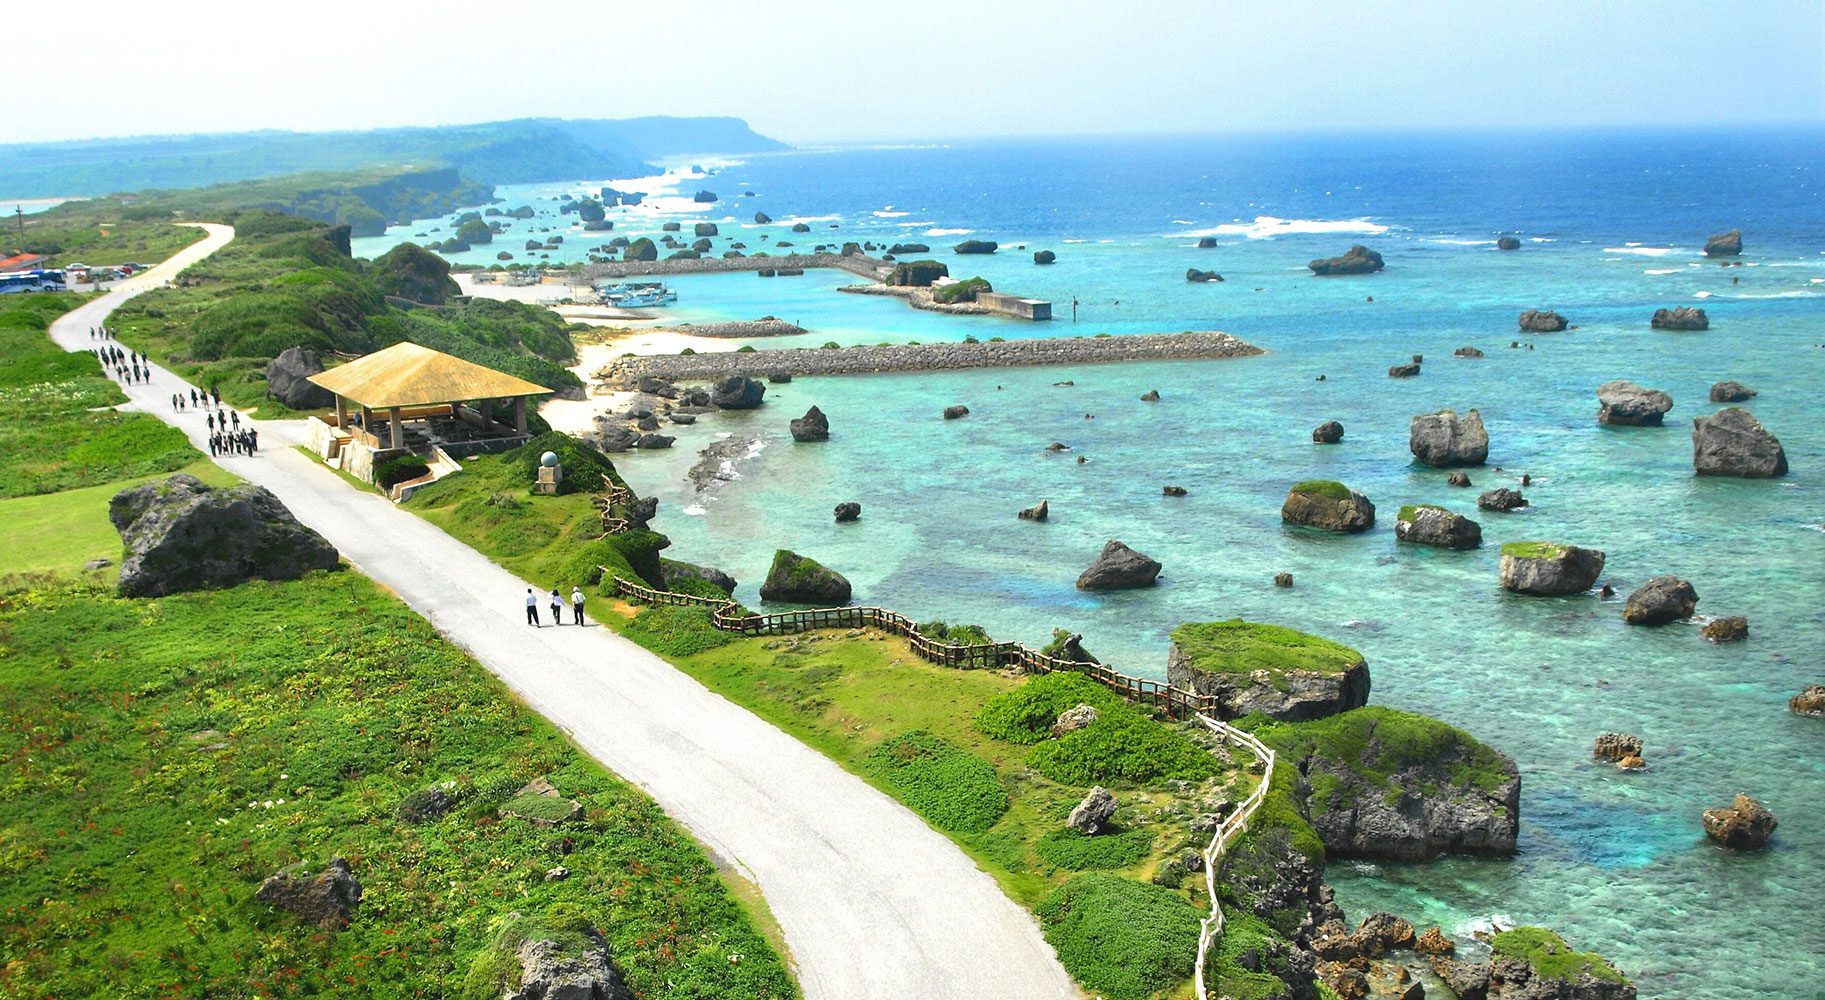 Bí quyết trẻ lâu của phụ nữ Okinawa, nơi có tuổi thọ cao nhất Nhật Bản